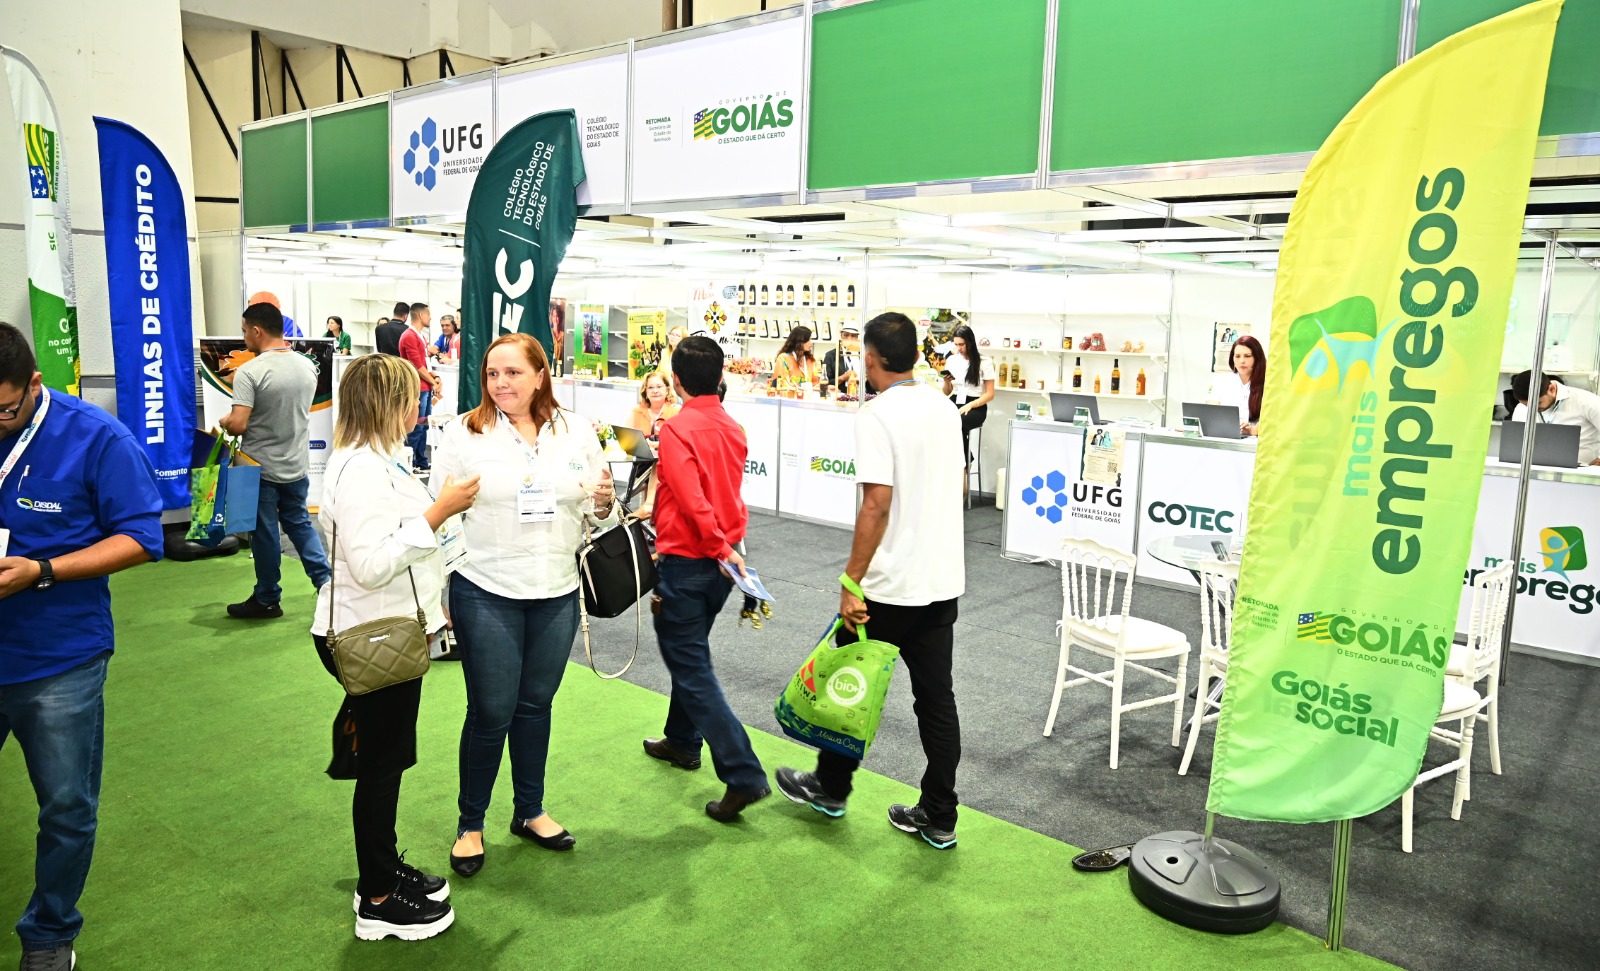 O governo de Goiás irá ofertar 4 mil vagas de emprego e inscrição em cursos de qualificação gratuitos oferecidos pelos Colégios Tecnológicos, os Cotecs, além de outros serviços durante a 77ª Exposição Agropecuária do Estado de Goiás.